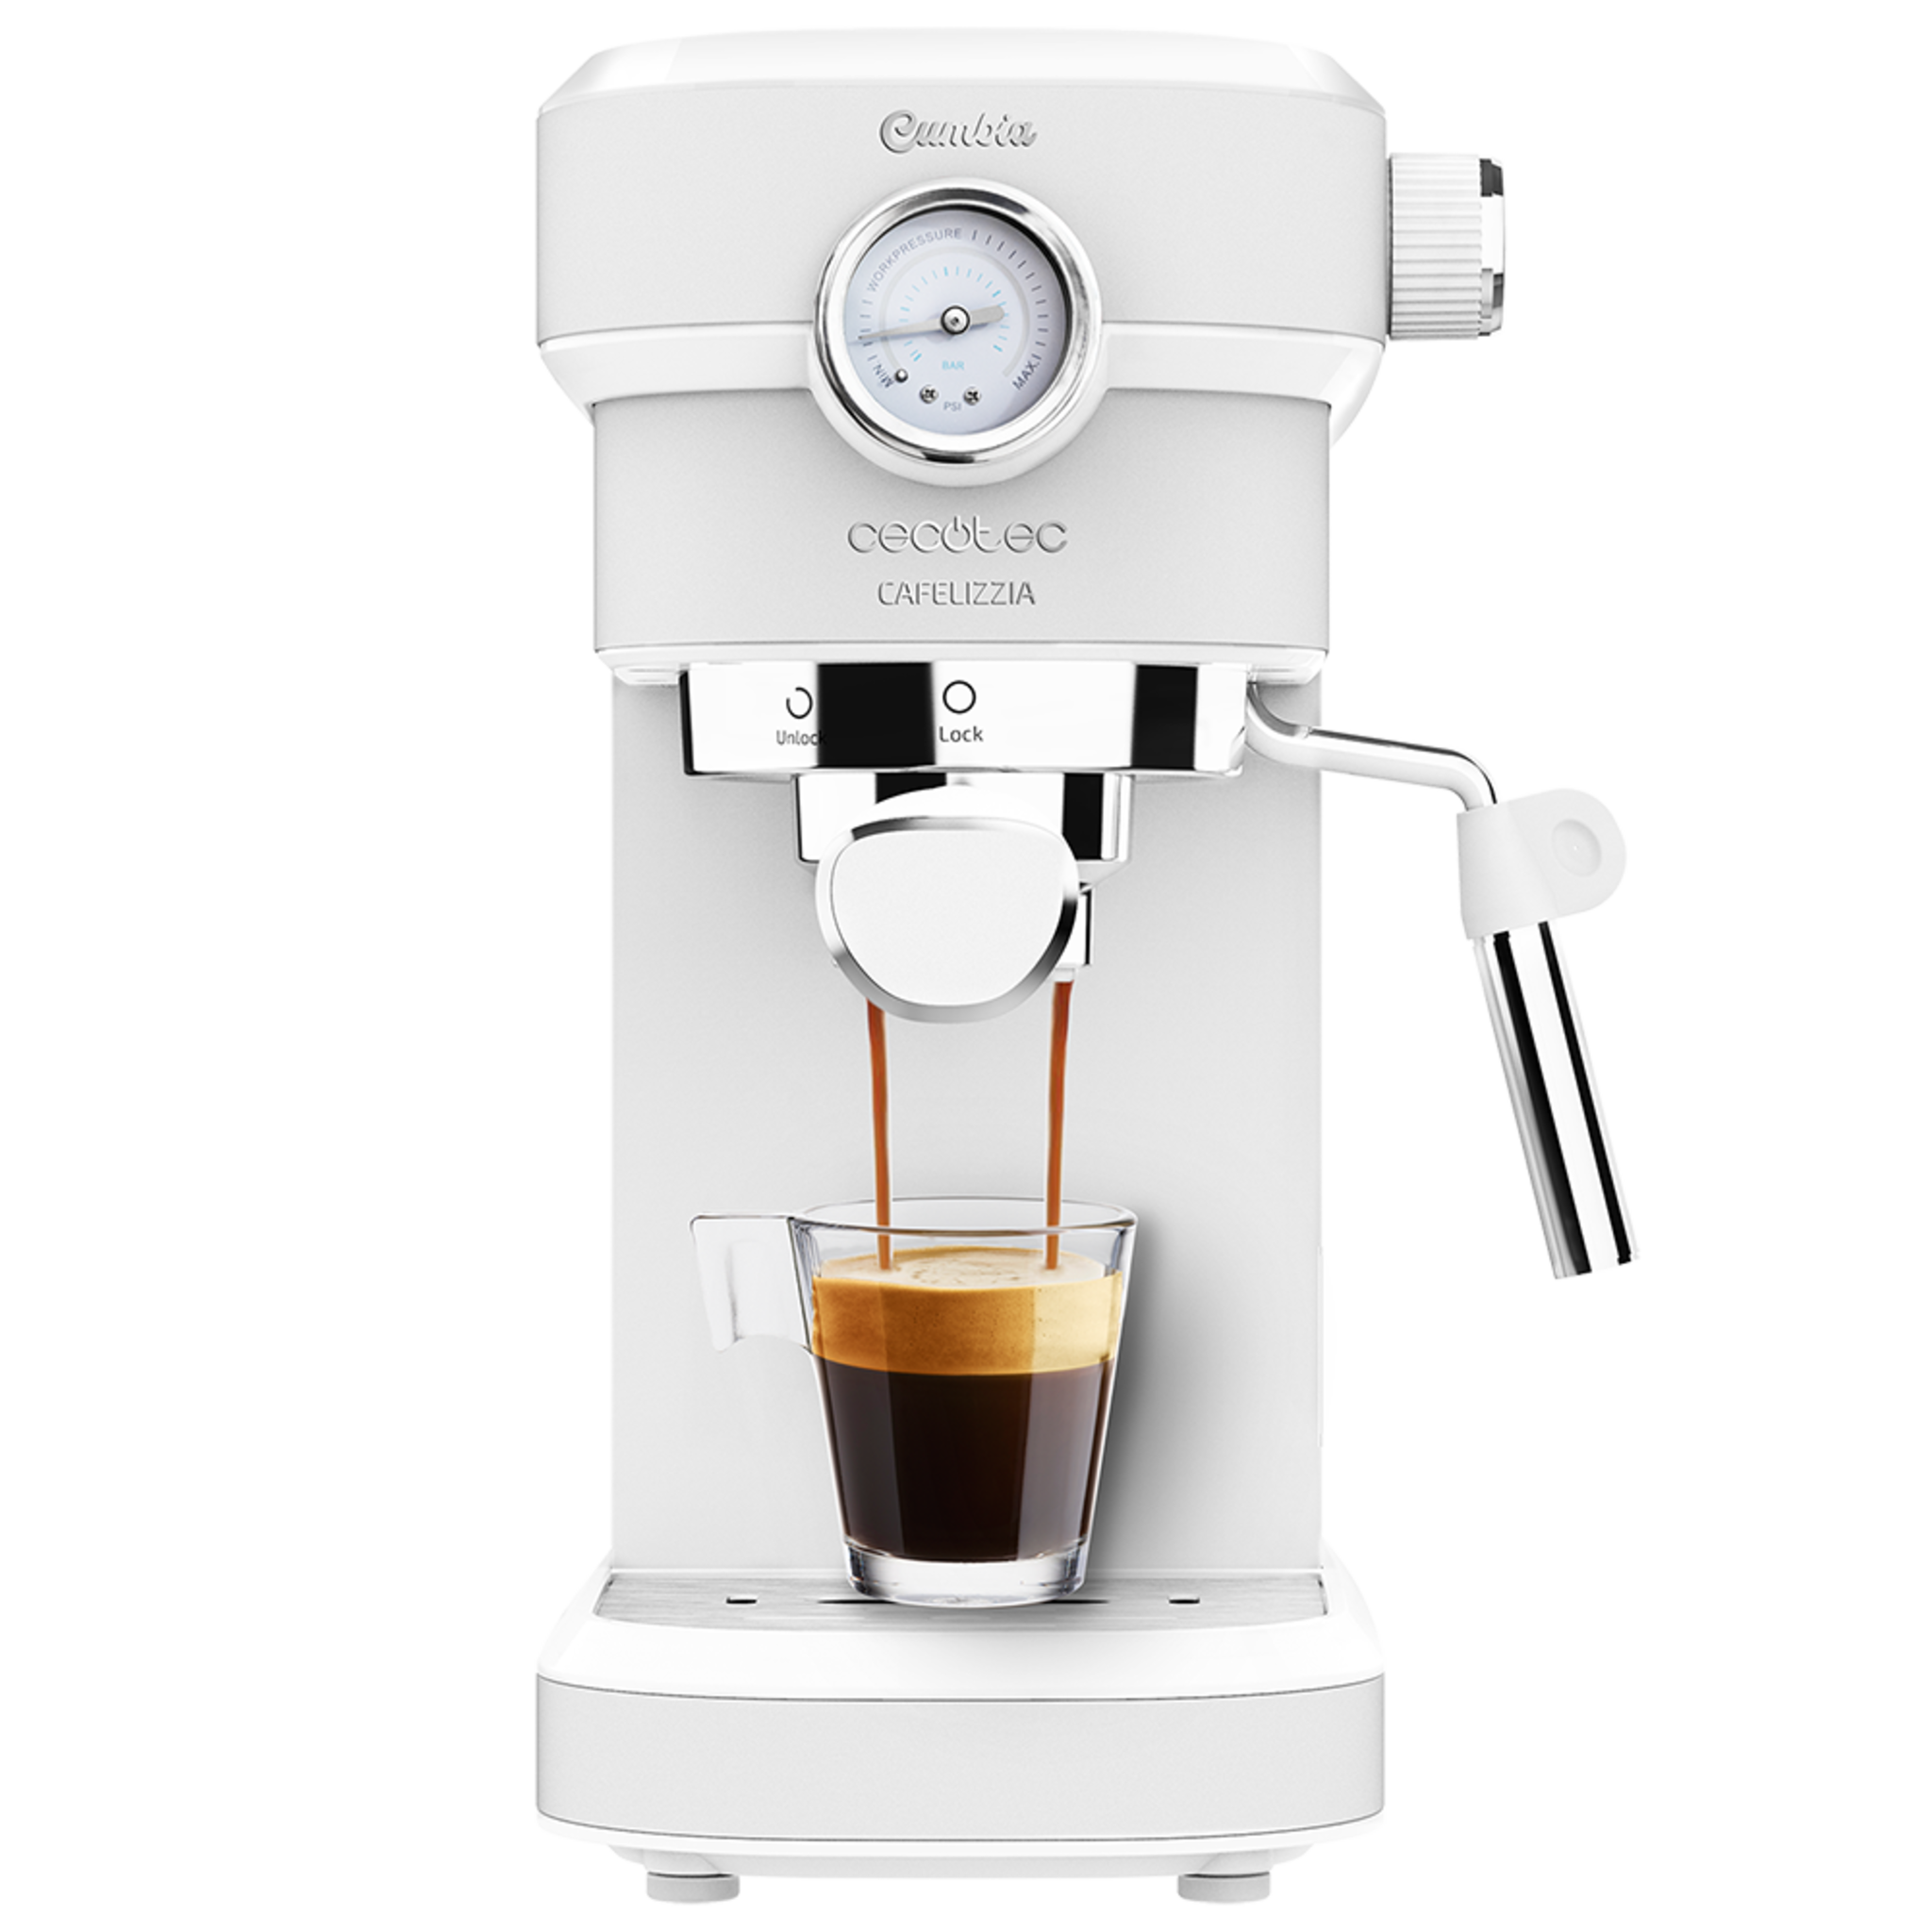 Cafetera Espresso Cafelizzia 790 White Pro.Sistema Thermoblock, 20 Bares, ModoAuto 1 y 2 Cafés, Vaporizador Orientable, Conducto de Agua para Infusiones